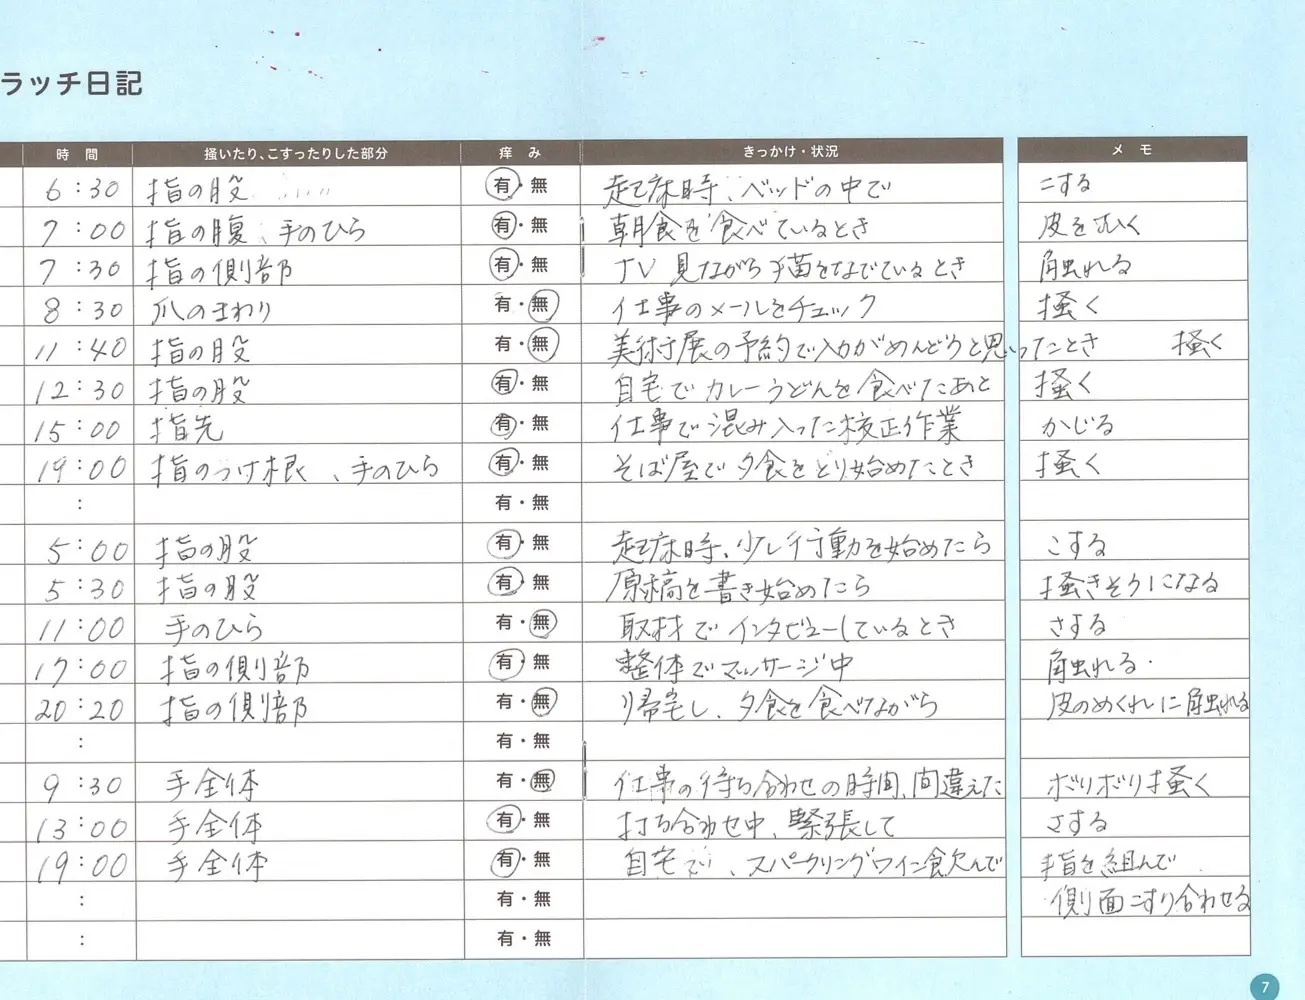 実際につけた小田の日記。どういうときに掻破行動をしているかがわかった。